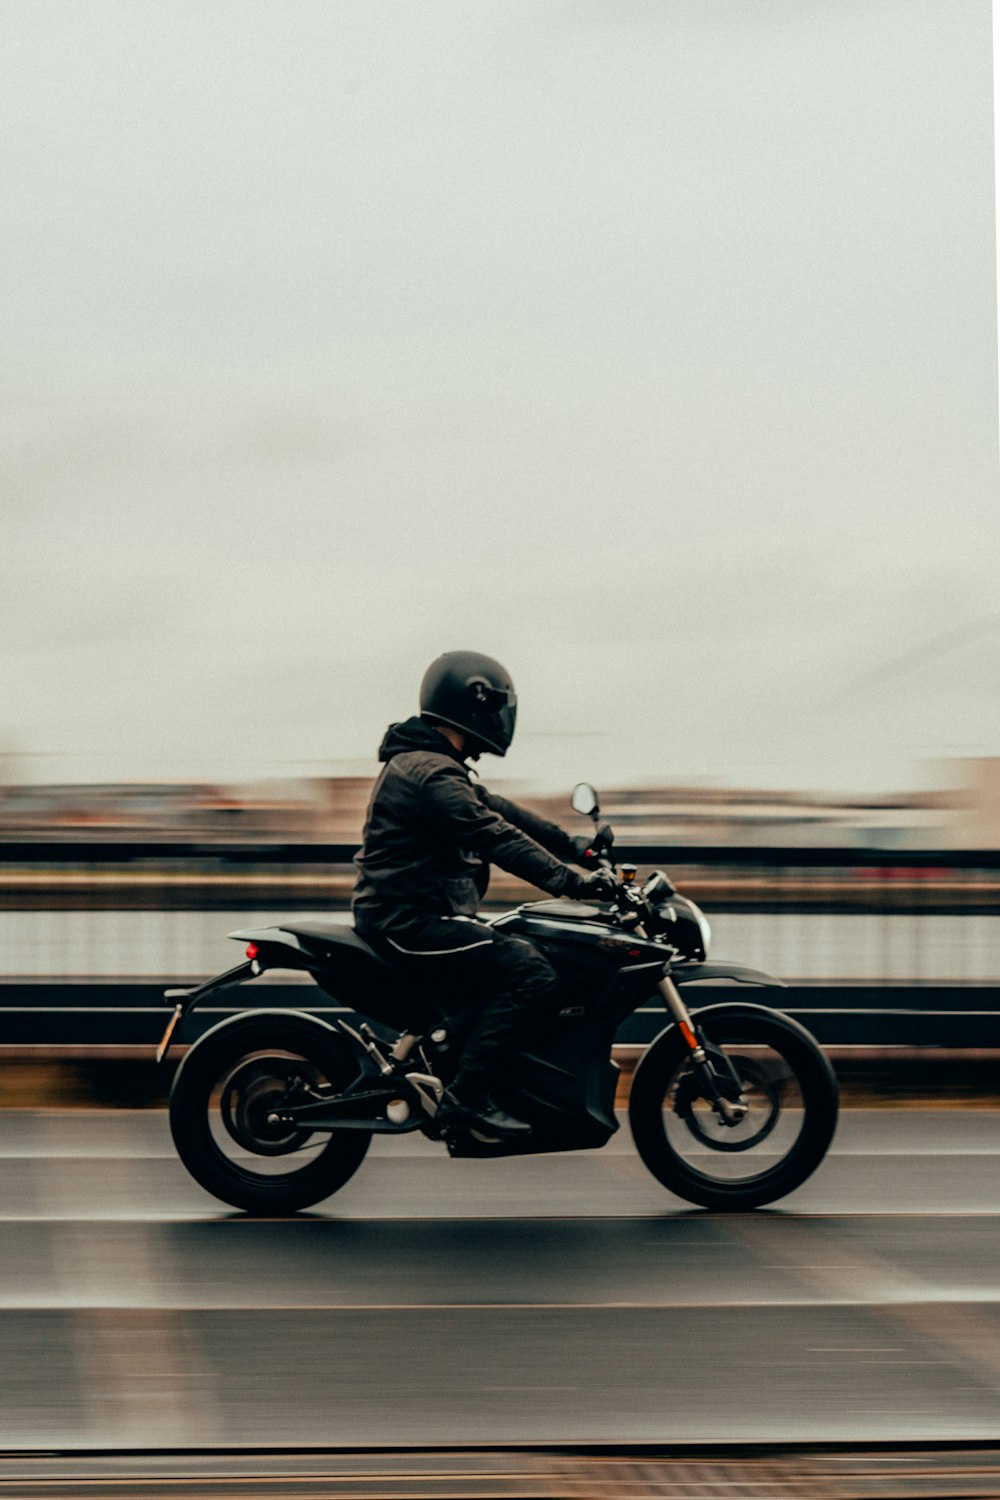 man in black motorcycle helmet riding motorcycle